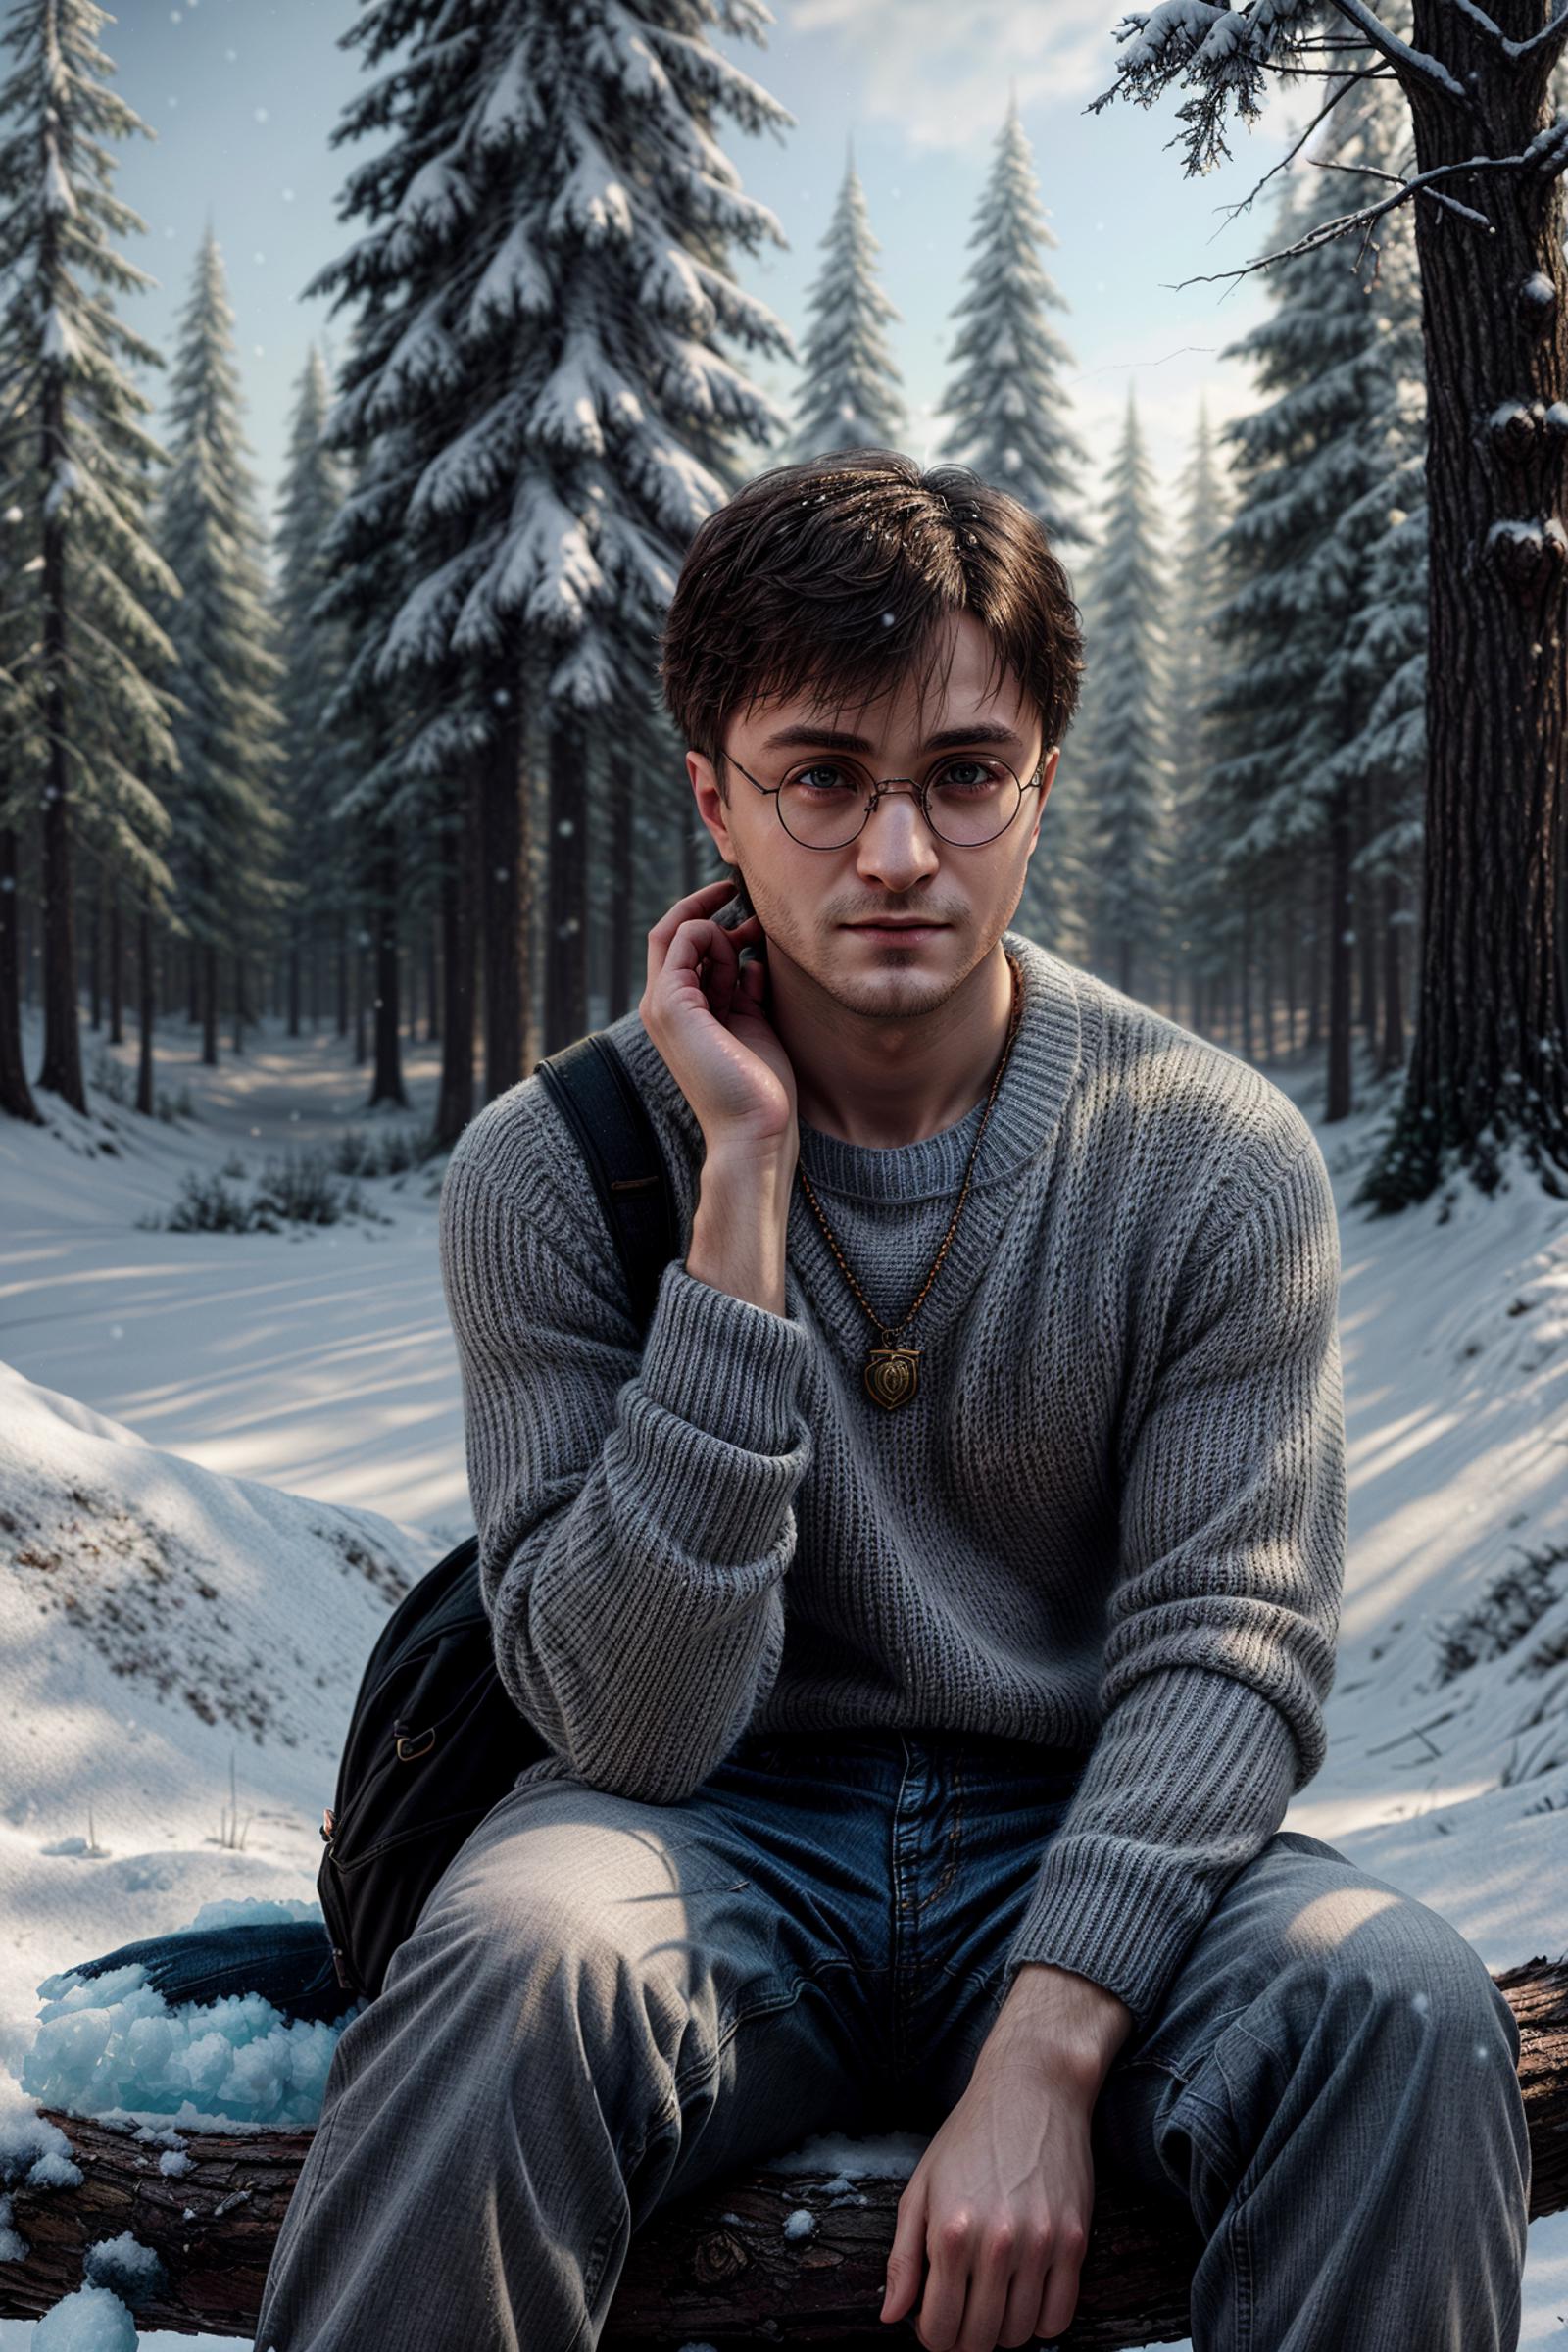 Harry Potter (Daniel Radcliffe) 2010-2011 image by XxsatornxX